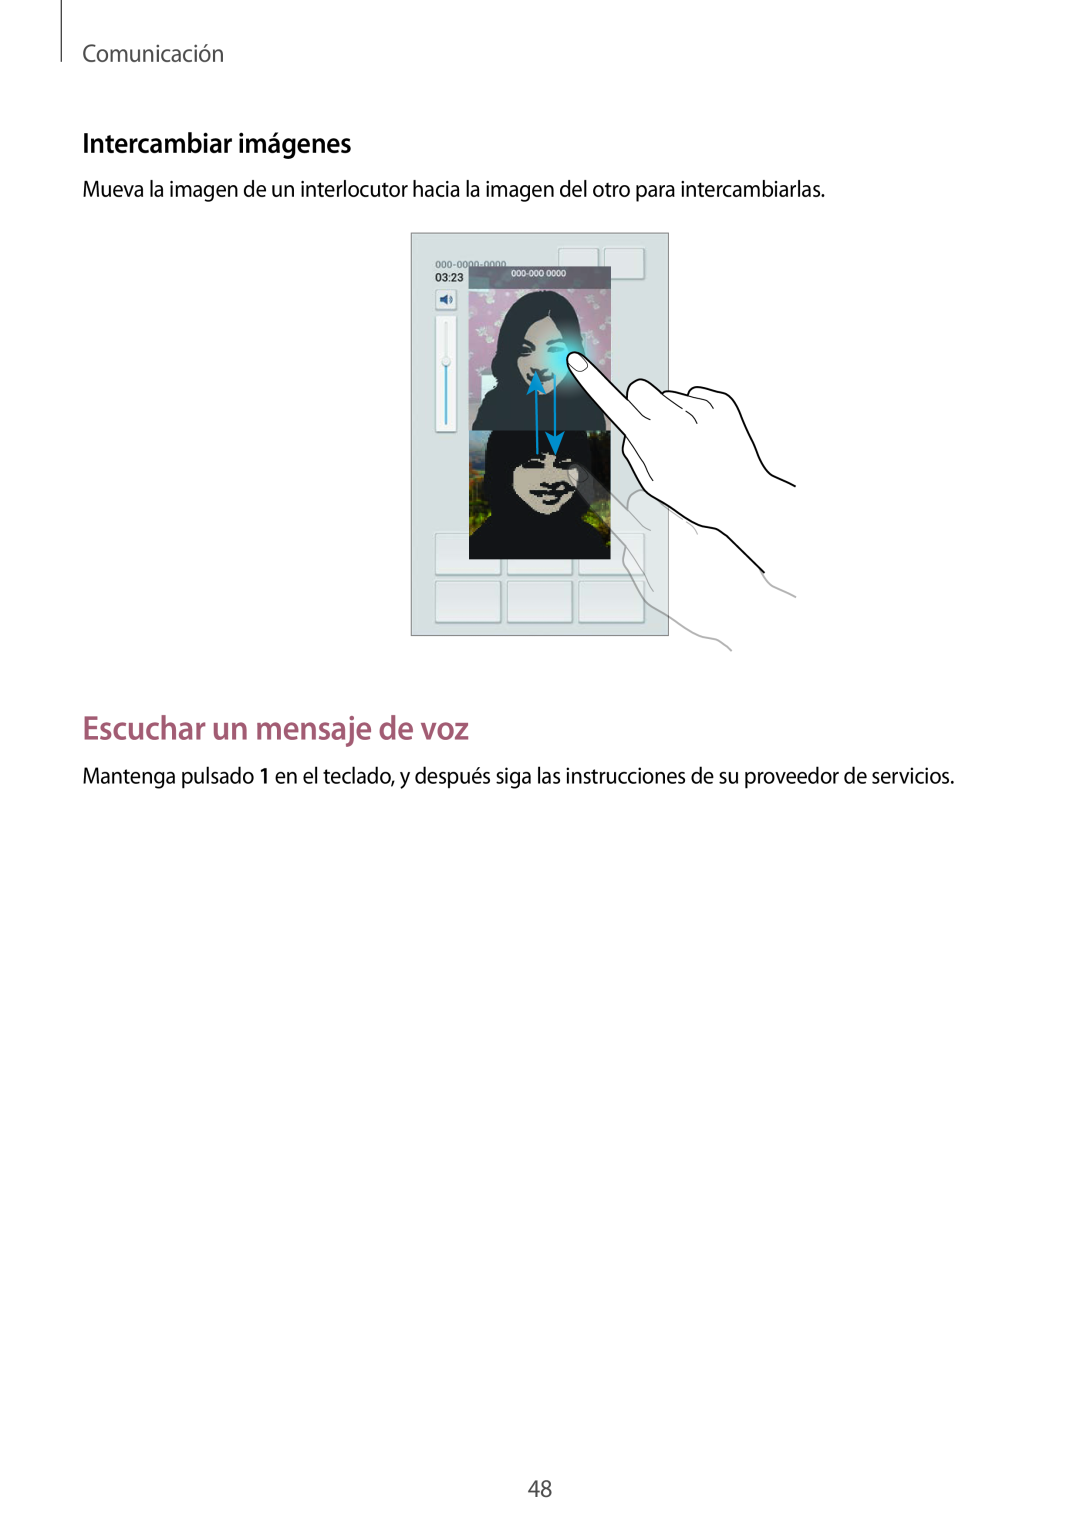 Samsung SM-T3150ZWAATL manual Escuchar un mensaje de voz, Intercambiar imágenes, Comunicación 